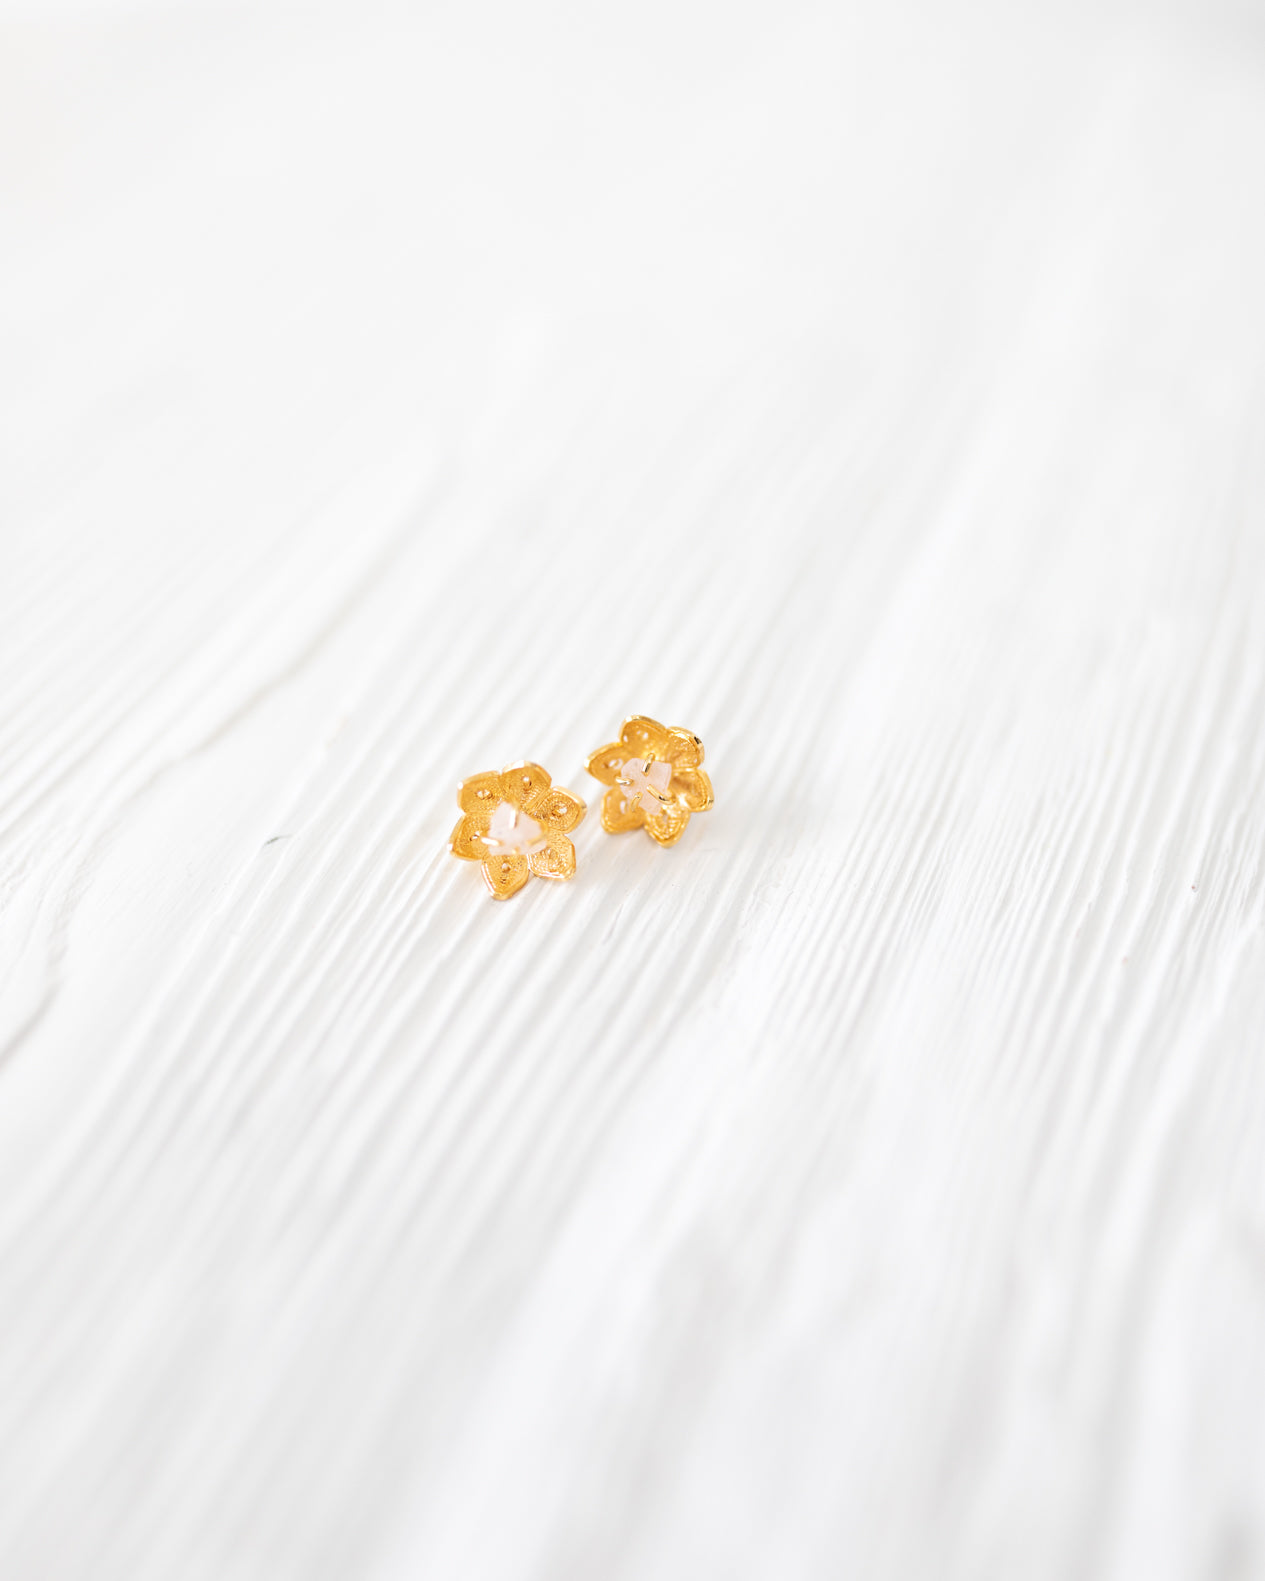 Rose Quartz in Gold Flower Earrings